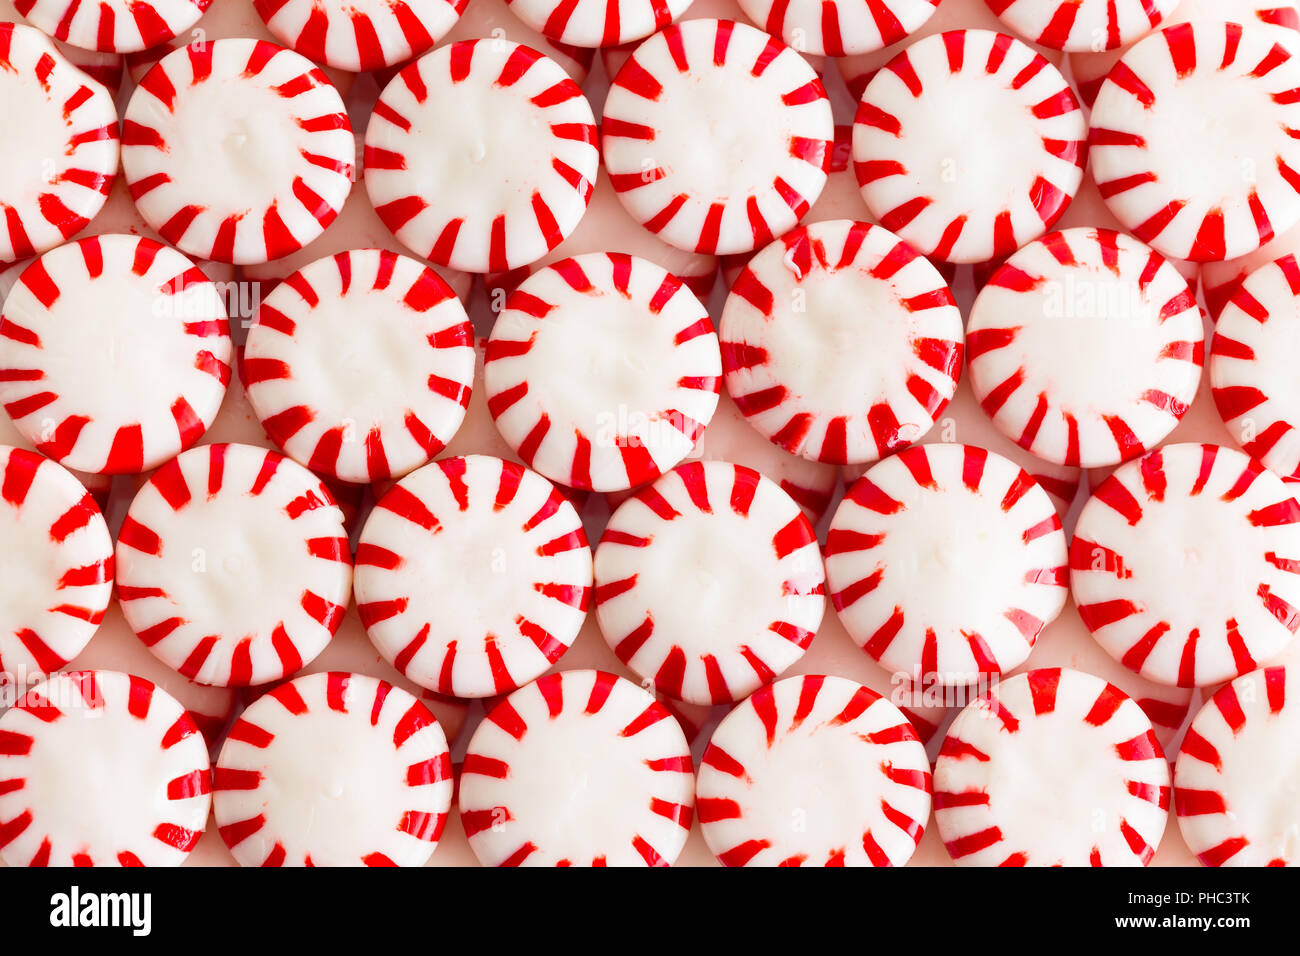 Rouge et blanc colorés ou aromatisés à la menthe menthe bonbons starlight dans un appartement plein de vie encore laïcs frame background Banque D'Images